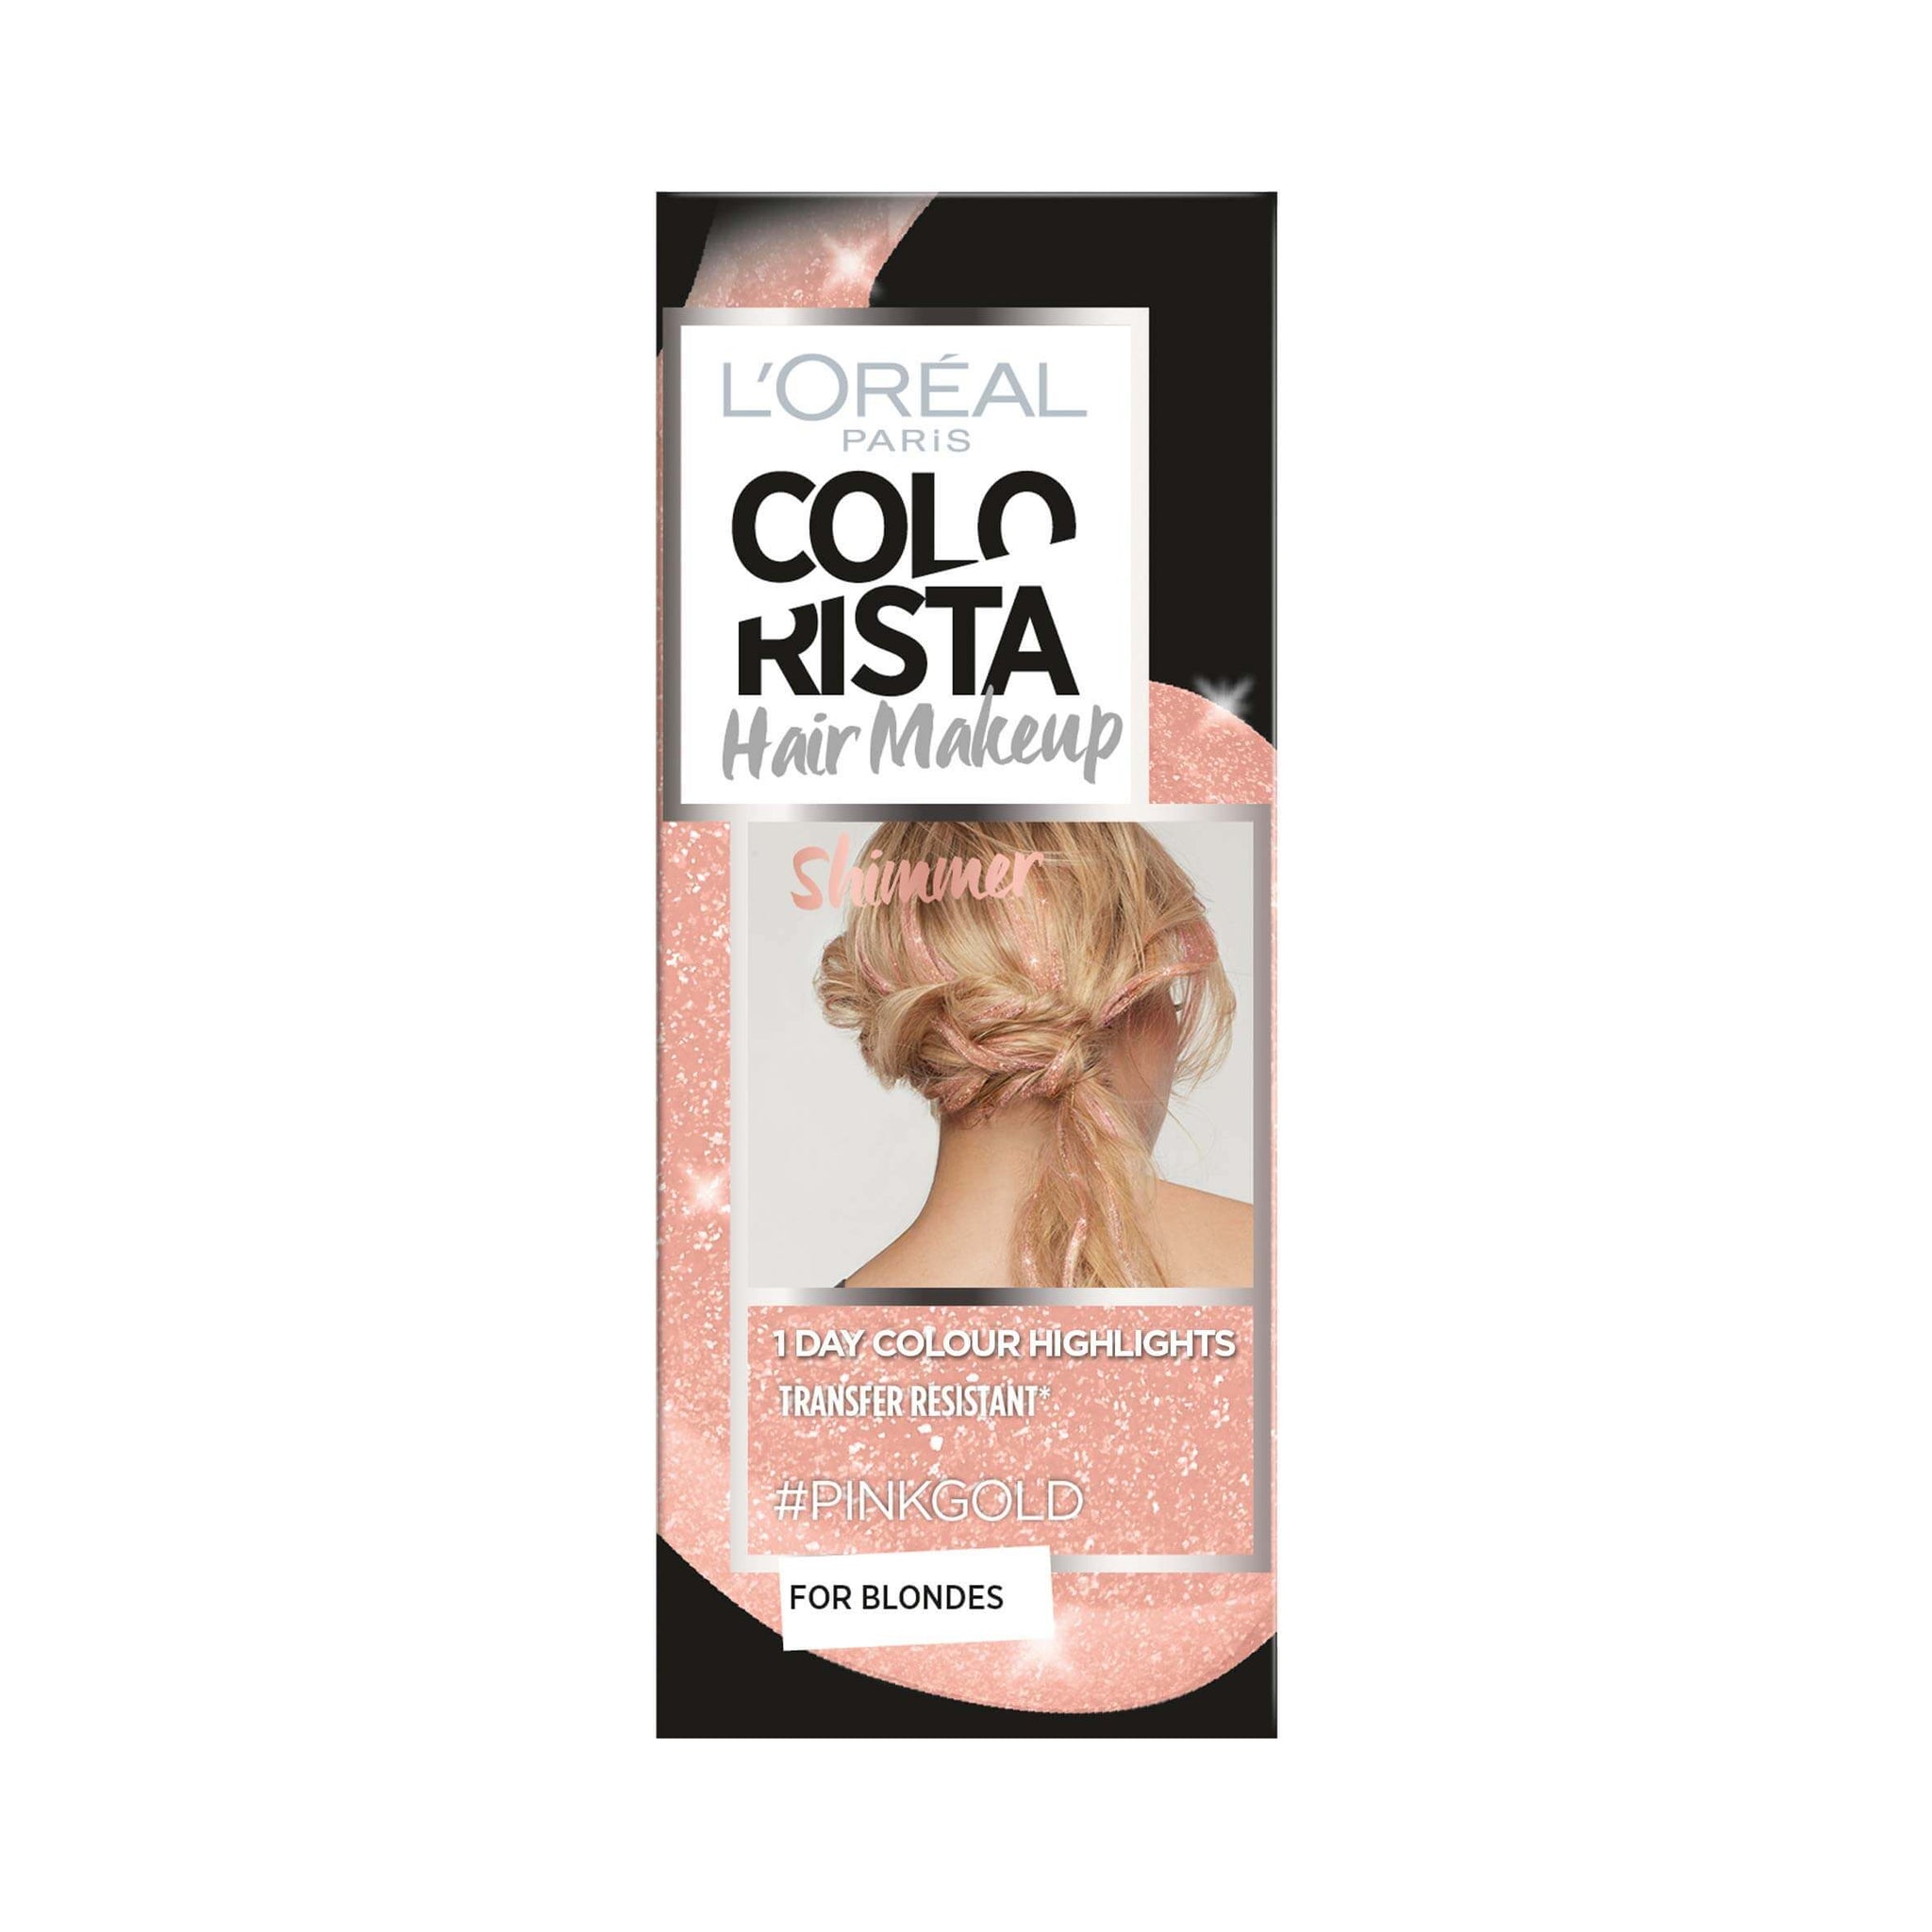 LOreal Colorista Hair Makeup Pink Gold 30ml